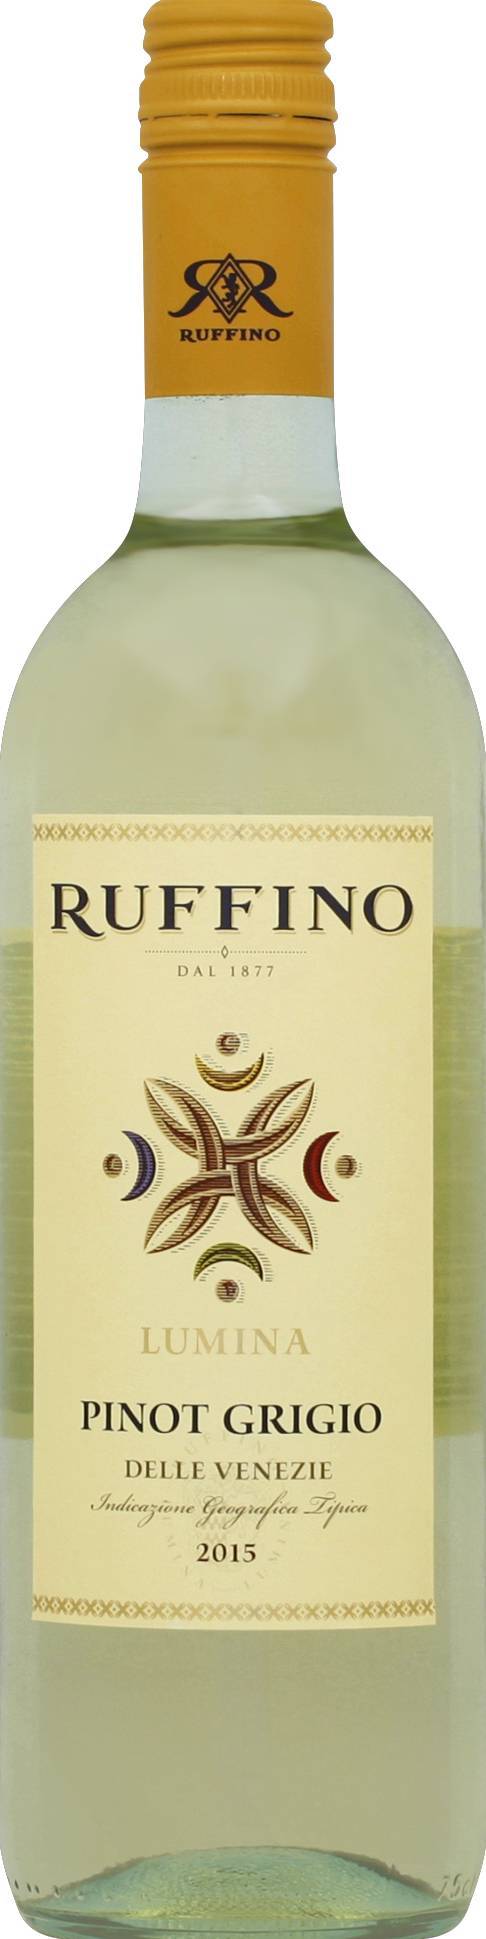 Ruffino Lumina Pinot Grigio Wine 2015 (750 ml)